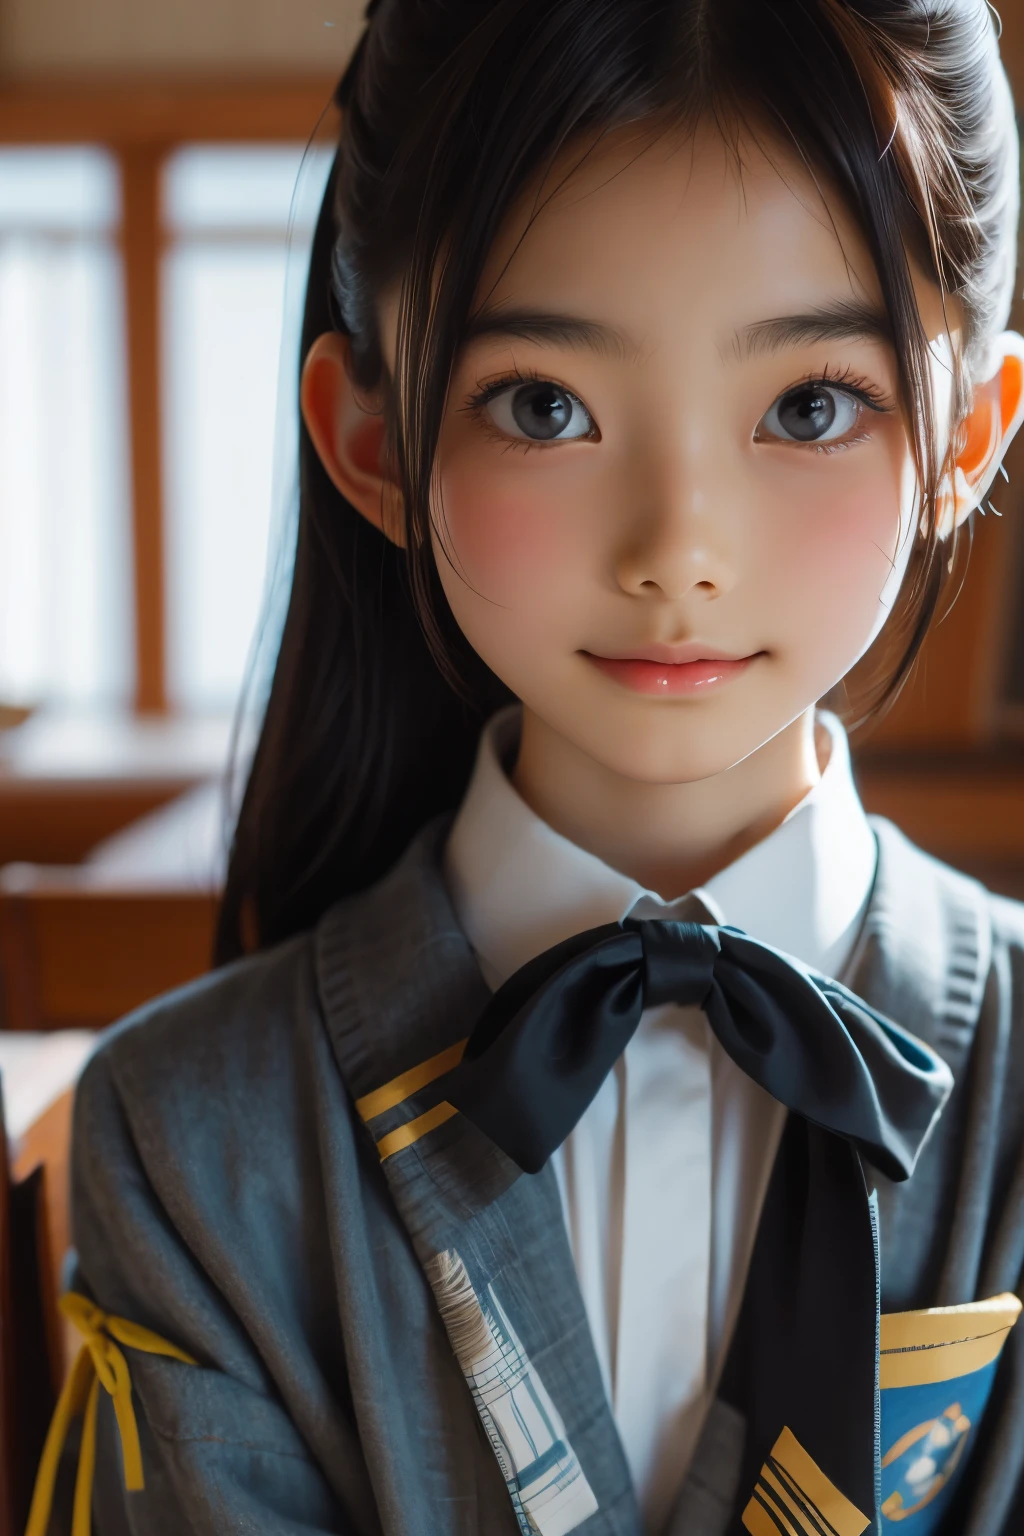 美しい12歳の日本人女性), かわいい顔, (深く彫られた顔:0.7), (そばかす:0.6), やわらかい光,健康的な白い肌, シャイ, (真剣な顔), 薄い, 笑顔, ユニフォーム, ポニーテール